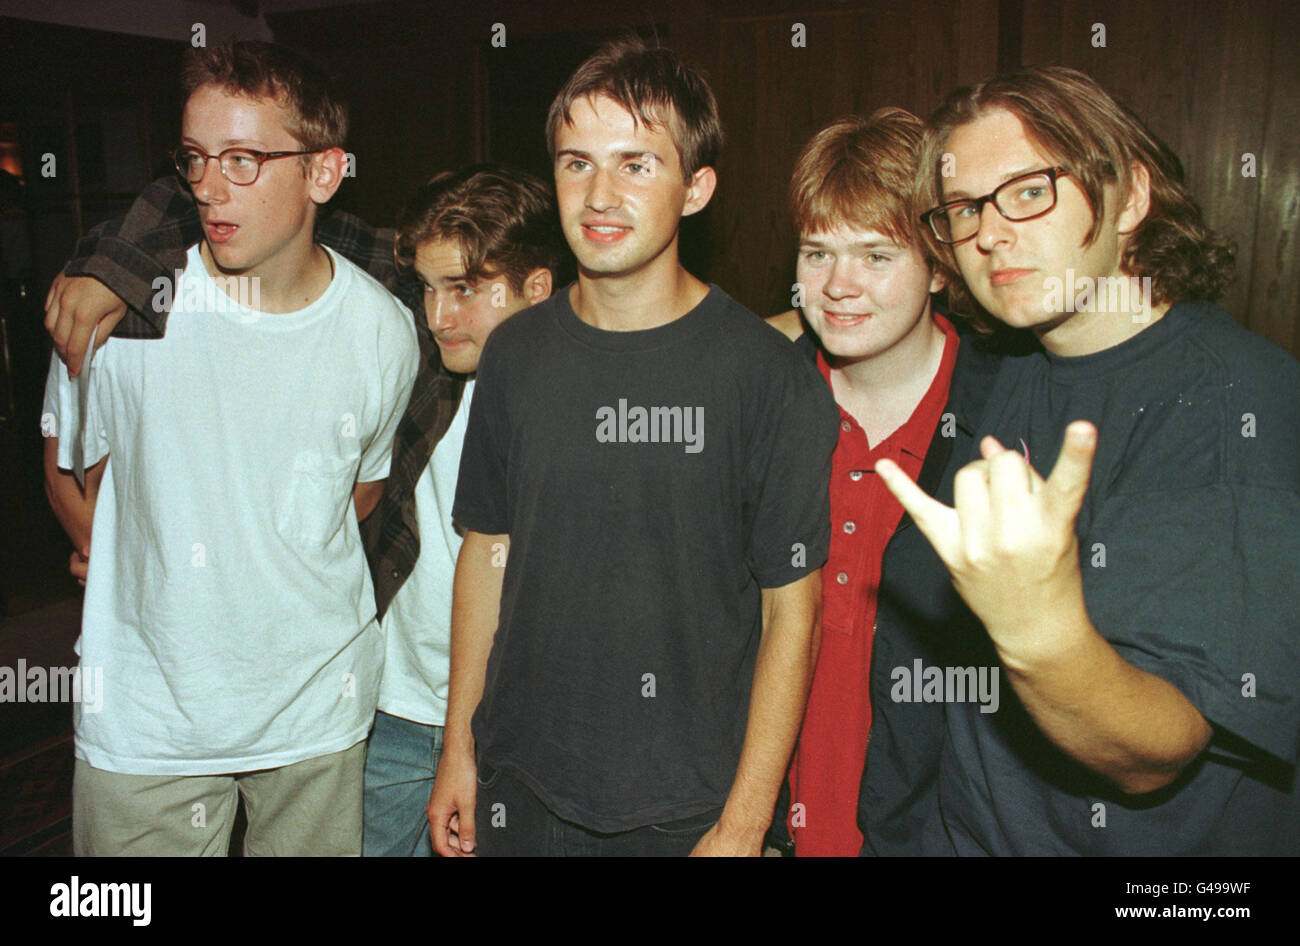 Simposio (L-R) Joe Birch (batterista), Hagop Tchaparian (chitarra), Ross Cummins (cantante), William McGonagle (chitarra), Wojtek Godzisz (bass) al Kerrang Awards 1997 a Londra. Foto Stock